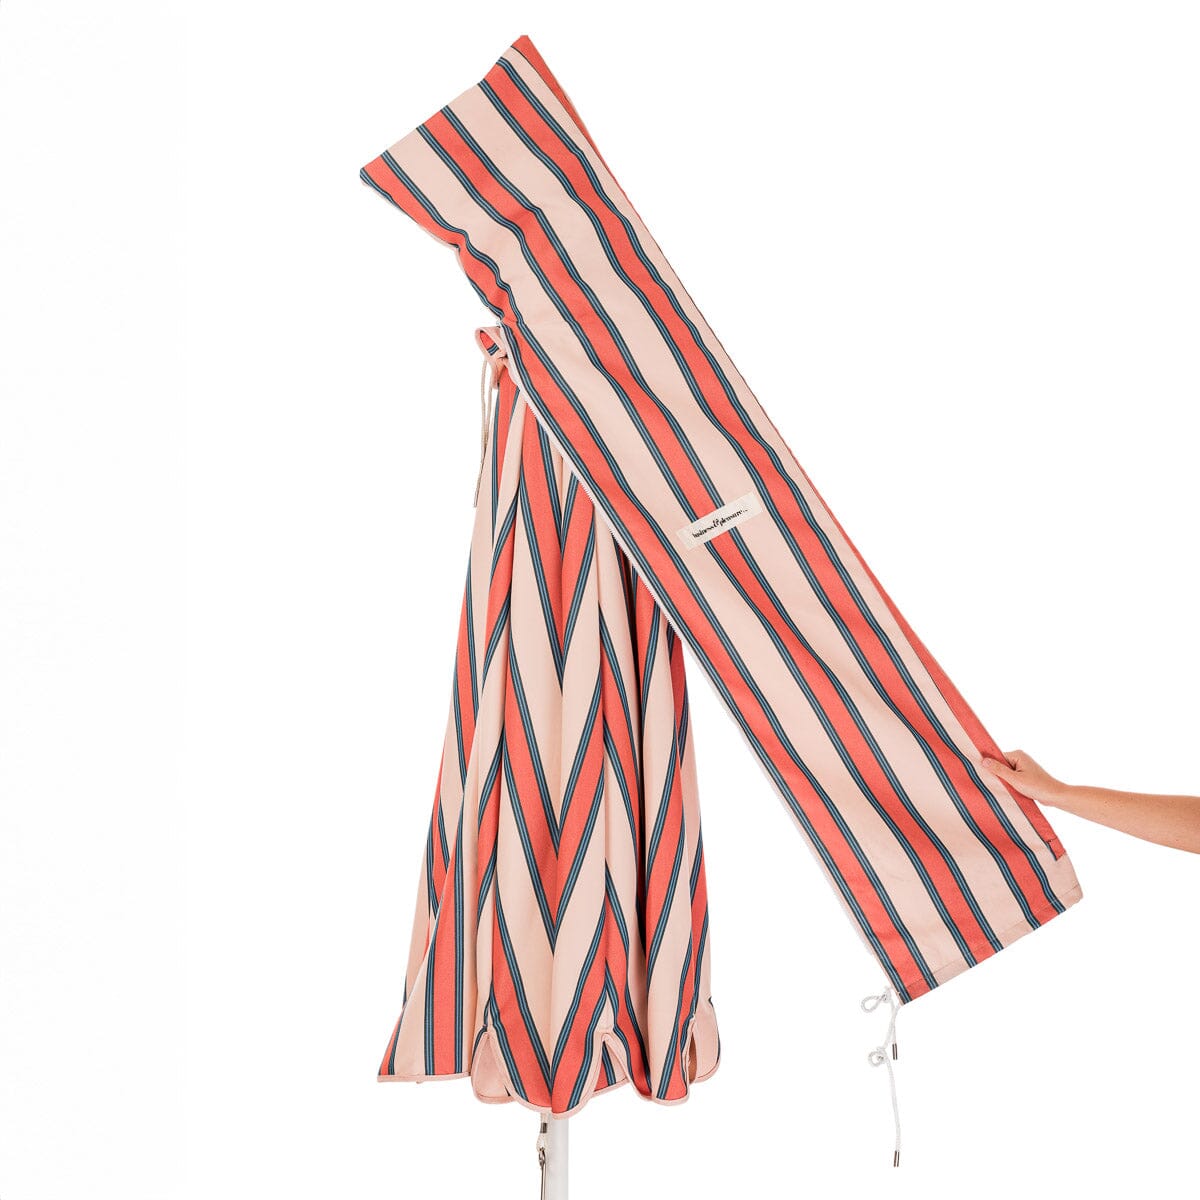 The Patio Umbrella - Bistro Dusty Pink Stripe Patio Umbrella Business & Pleasure Co 